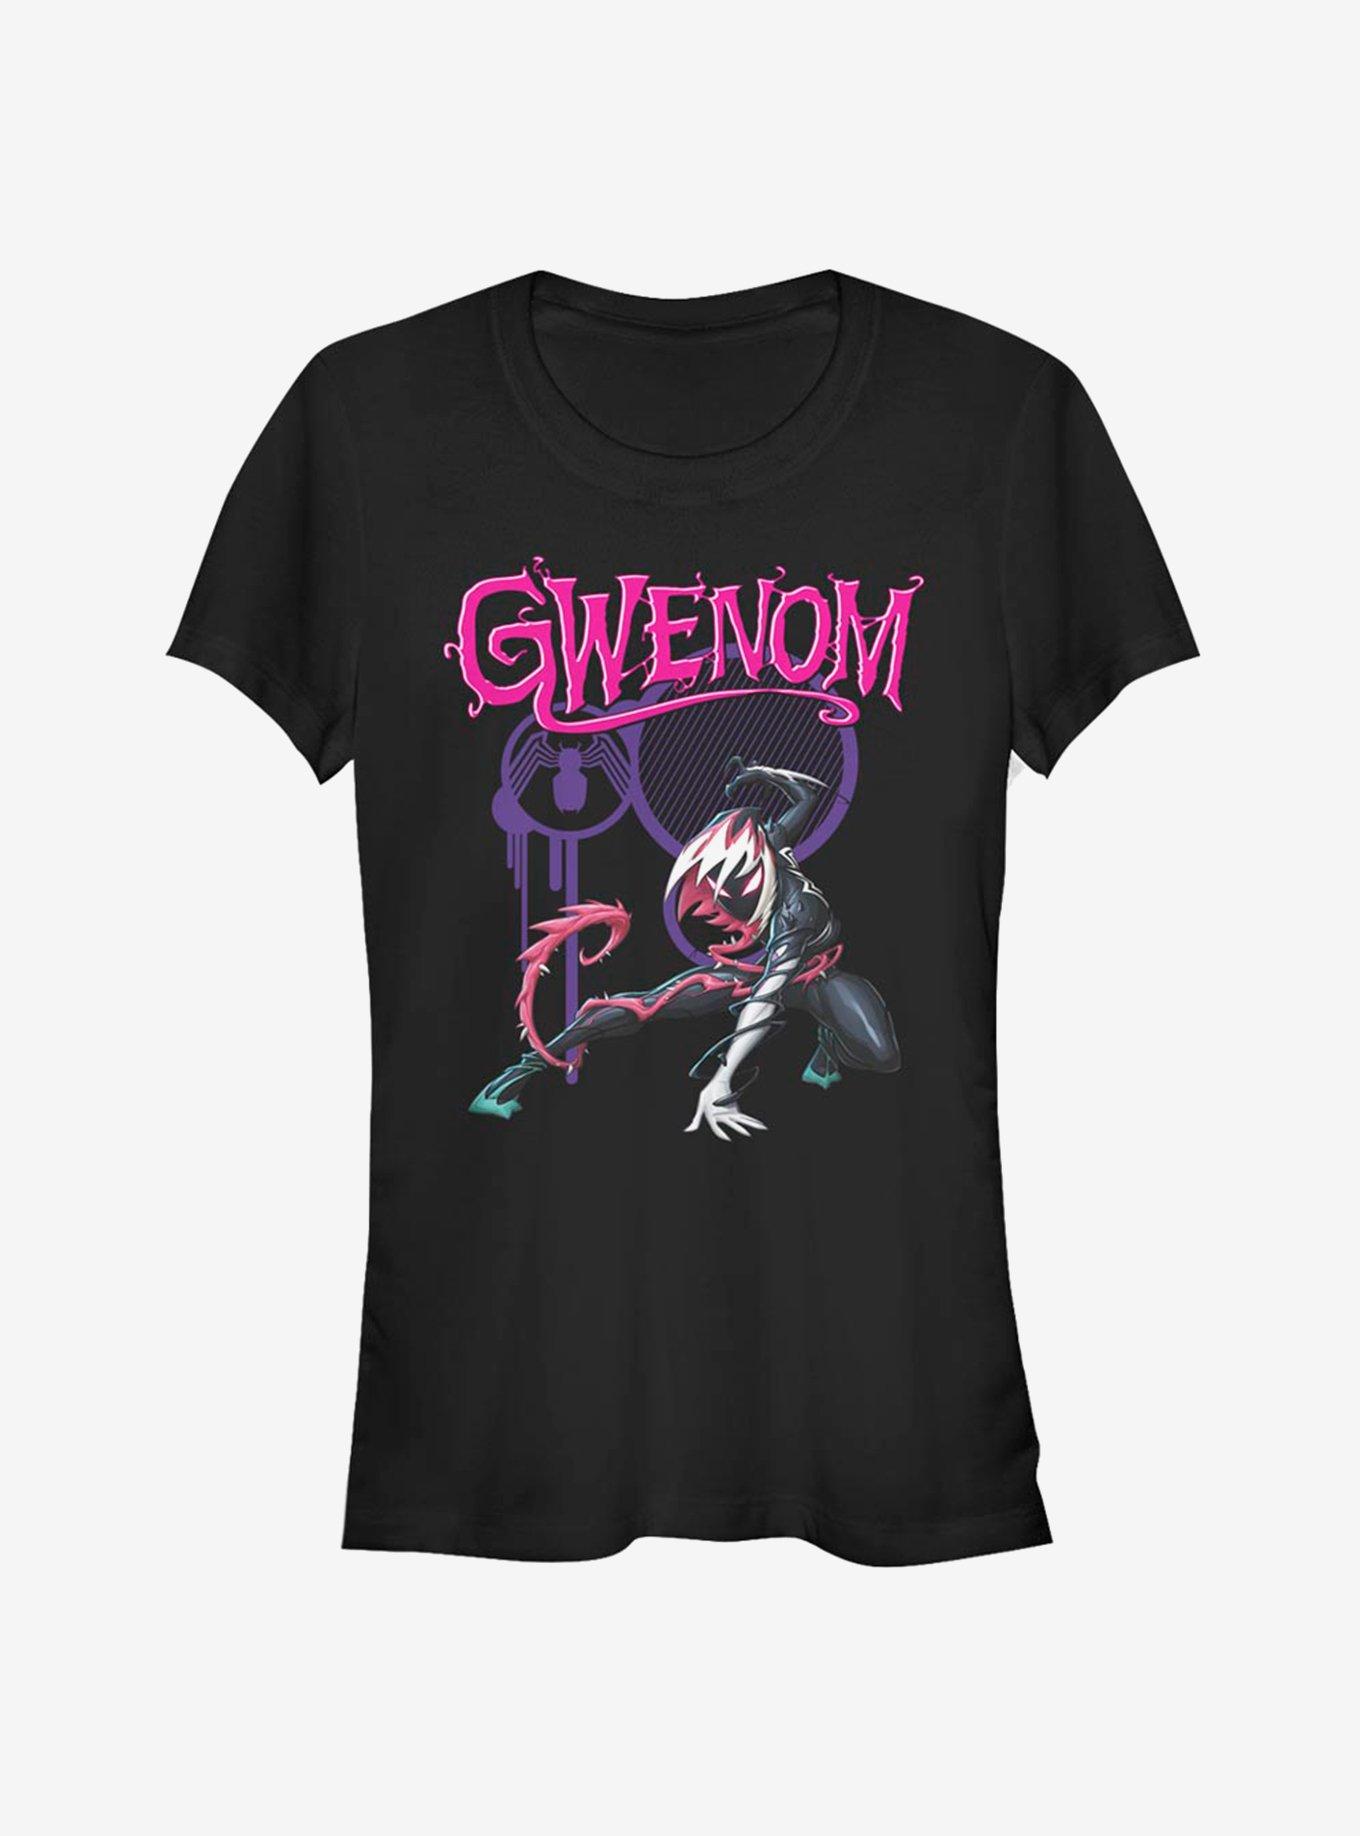 Marvel Spider-Man Gwen Stacy Venomized Gwenom T-Shirt, BLACK, hi-res